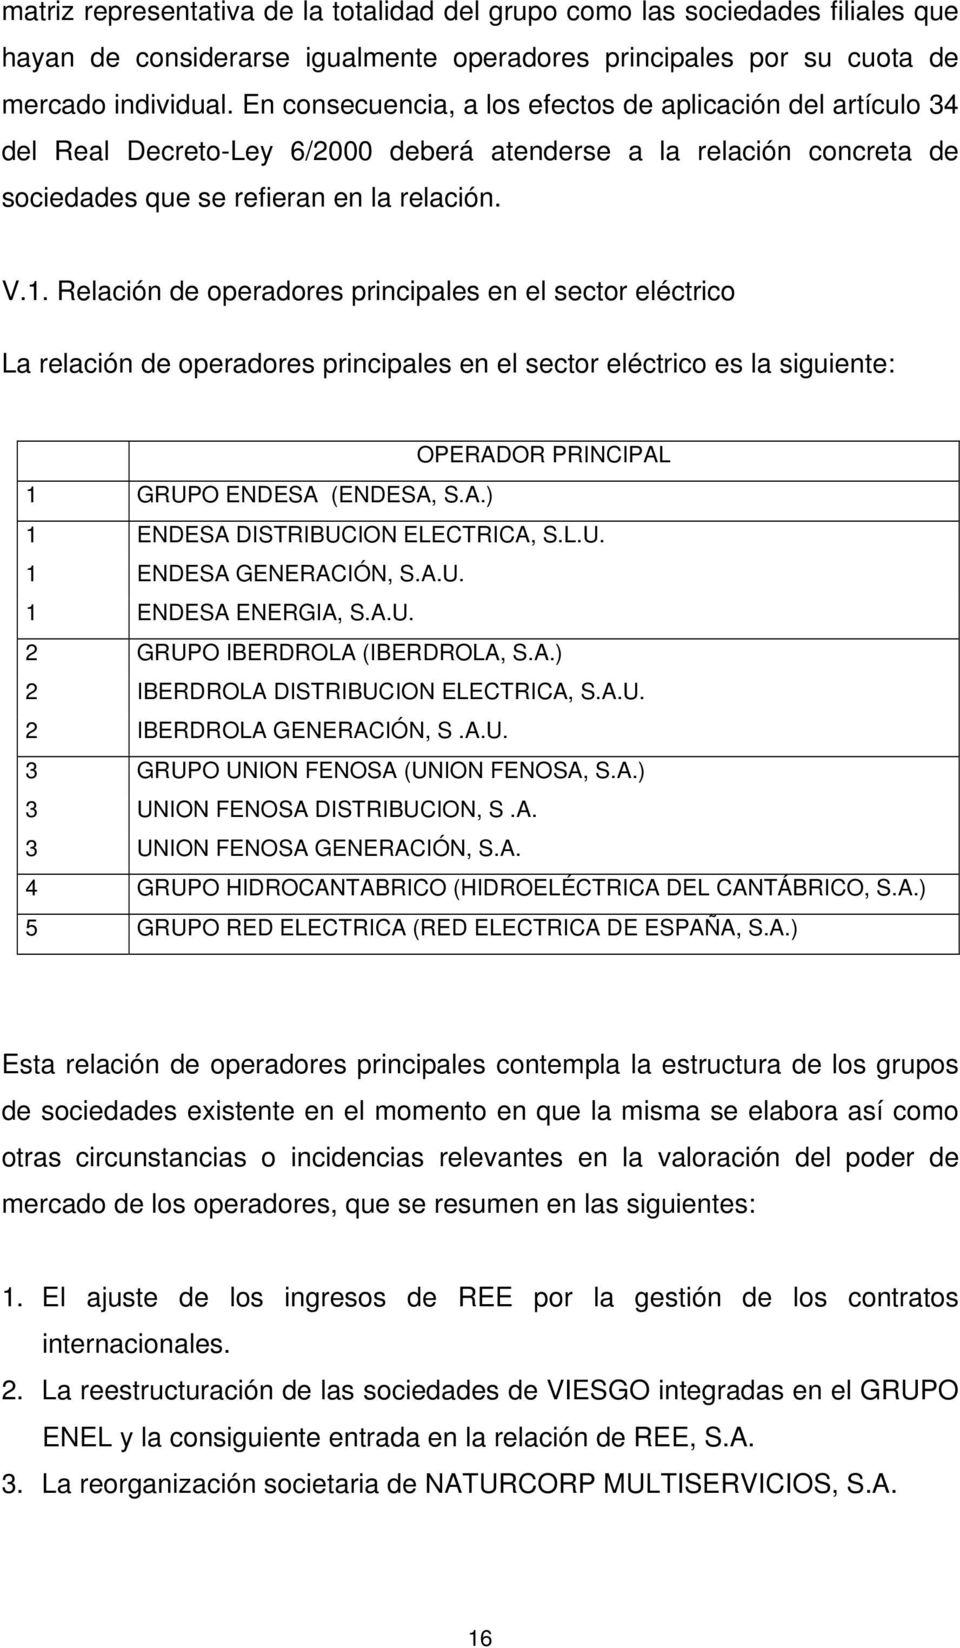 Relación de operadores principales en el sector eléctrico La relación de operadores principales en el sector eléctrico es la siguiente: OPERADOR PRINCIPAL 1 GRUPO ENDESA (ENDESA, S.A.) 1 ENDESA DISTRIBUCION ELECTRICA, S.